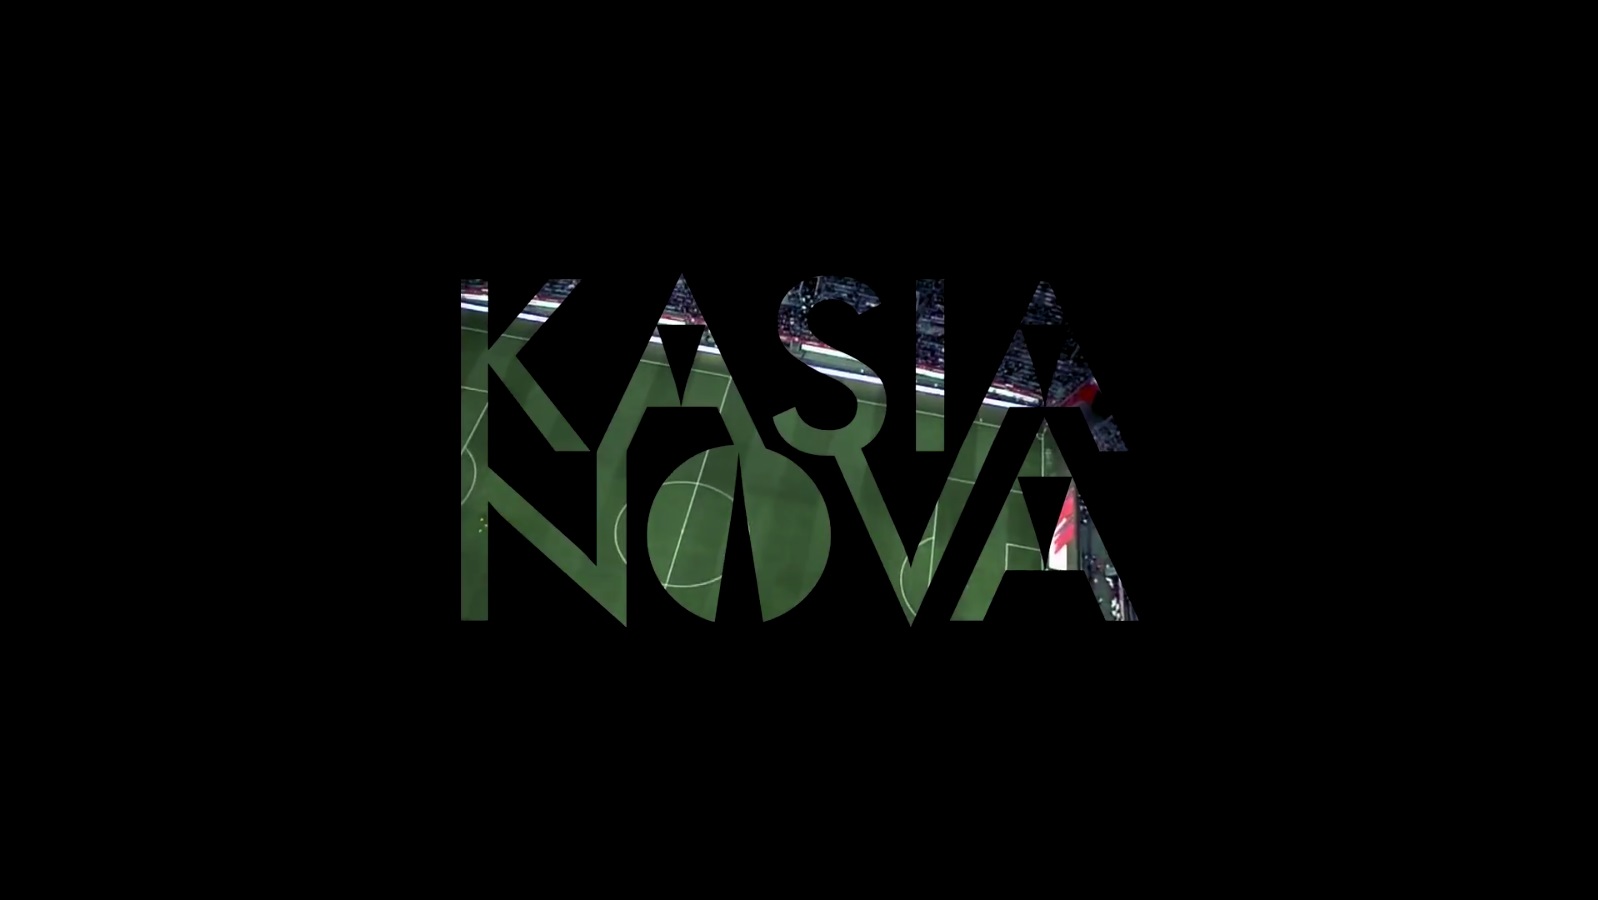 Kasia Nova - Wielki mecz